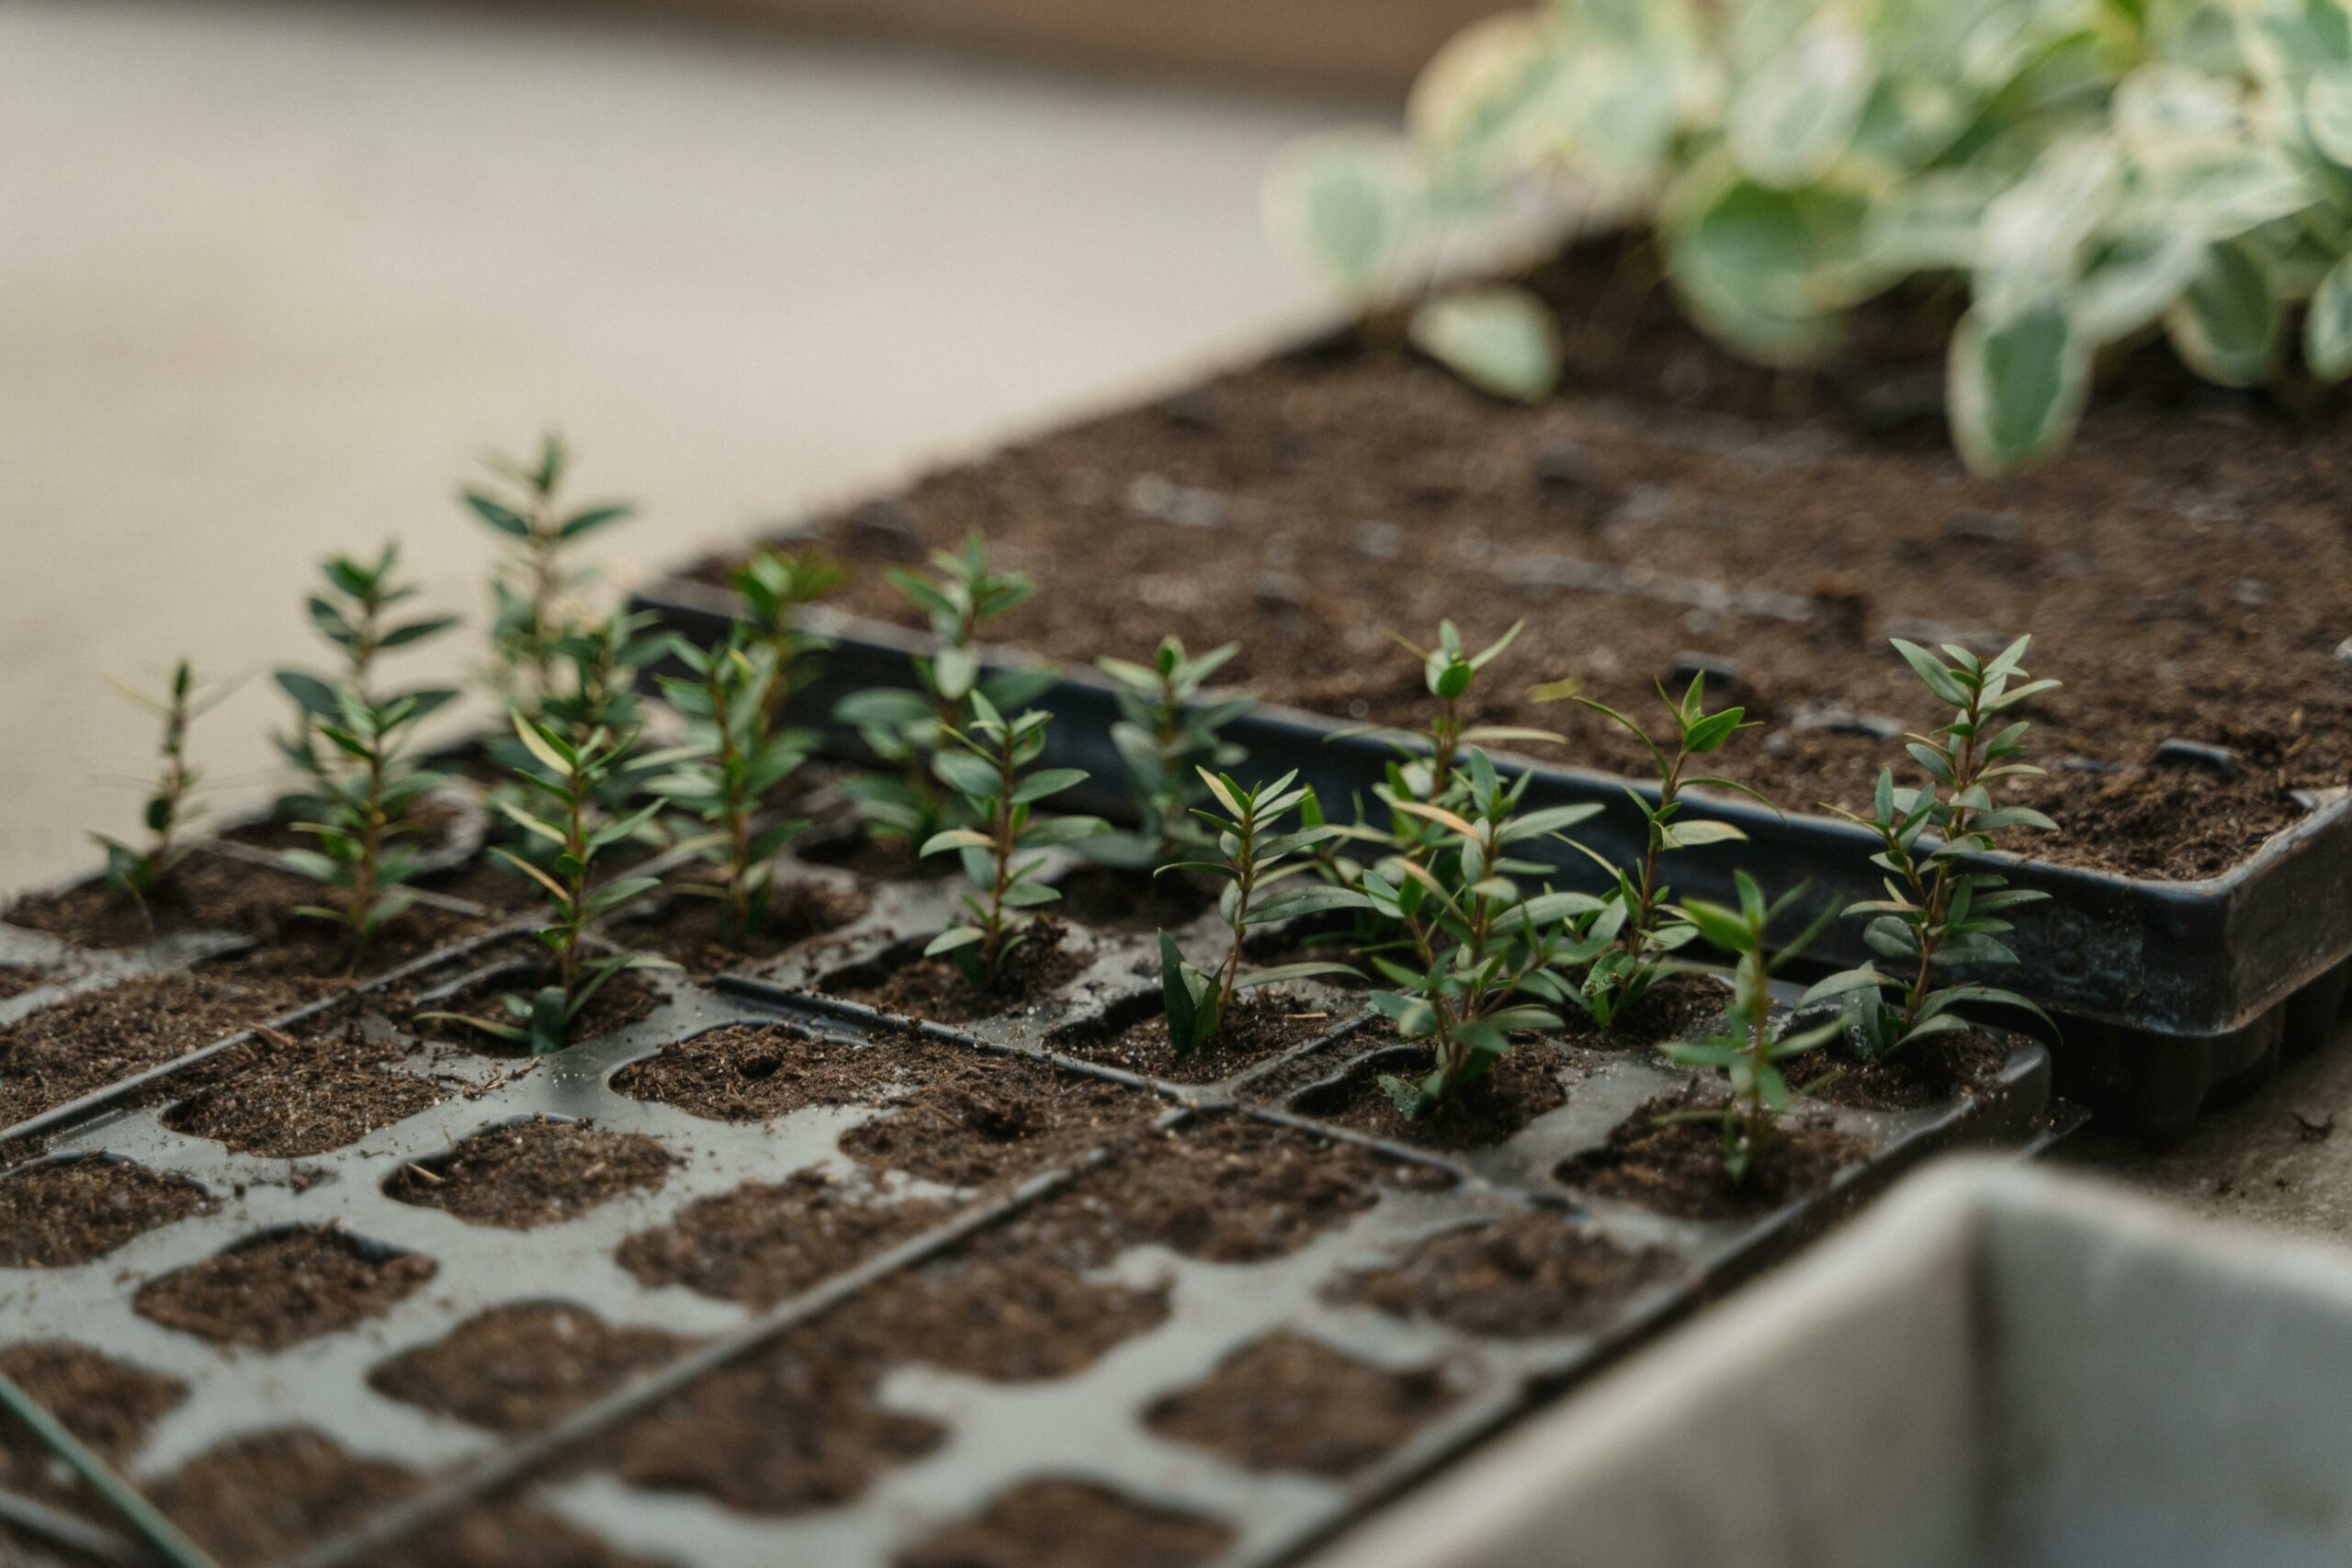 Comenzar a plantar a partir de semillas versus comprar plántulas: ¿Cuál es la elección correcta en su caso?